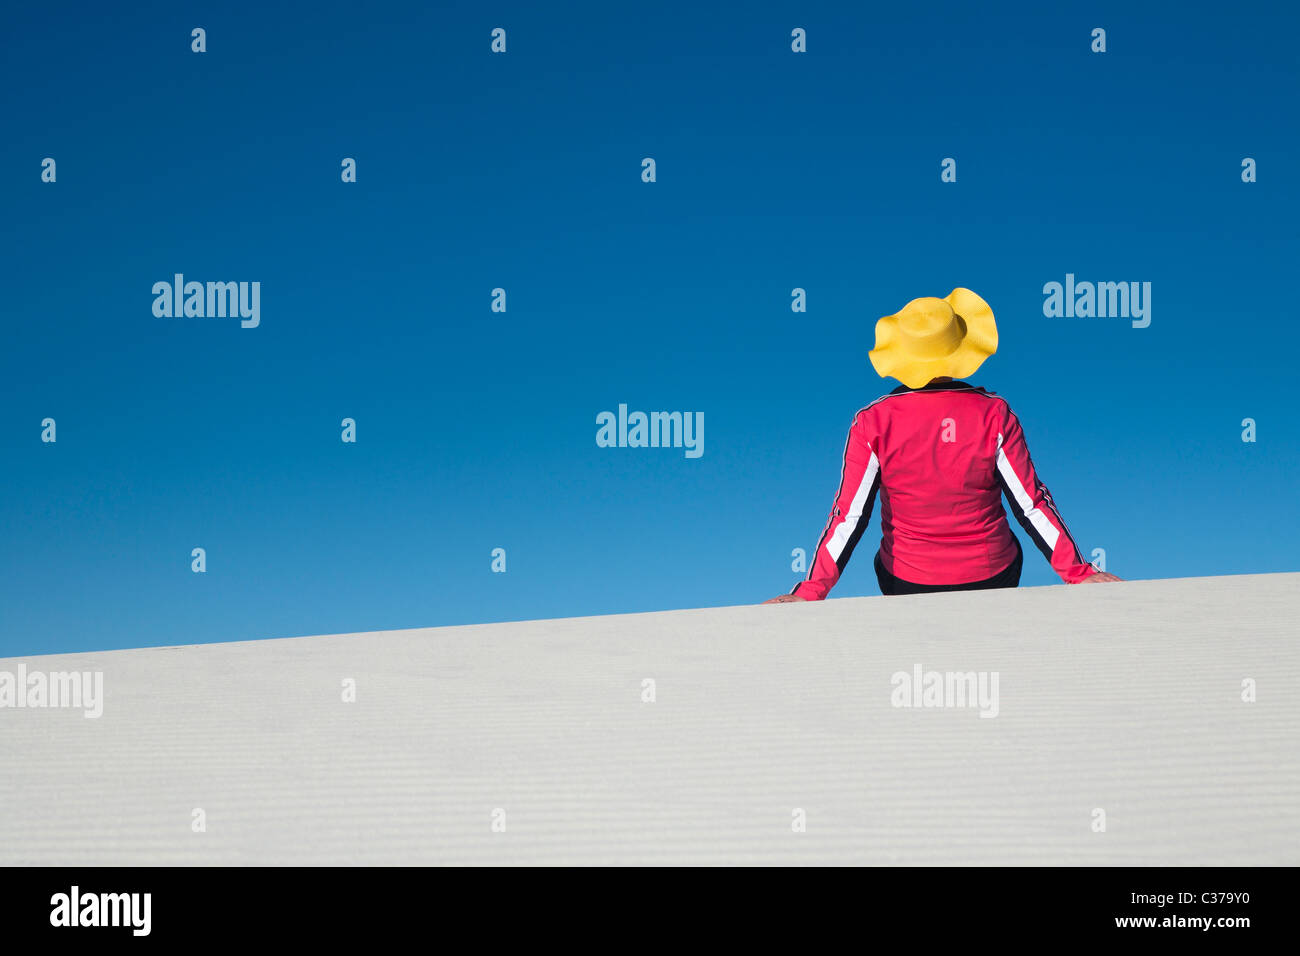 Frau, gelben Mütze, rosa Hemd, allein, weiße Sanddüne, blauer Himmel, konzeptionelle, Modell veröffentlicht Stockfoto